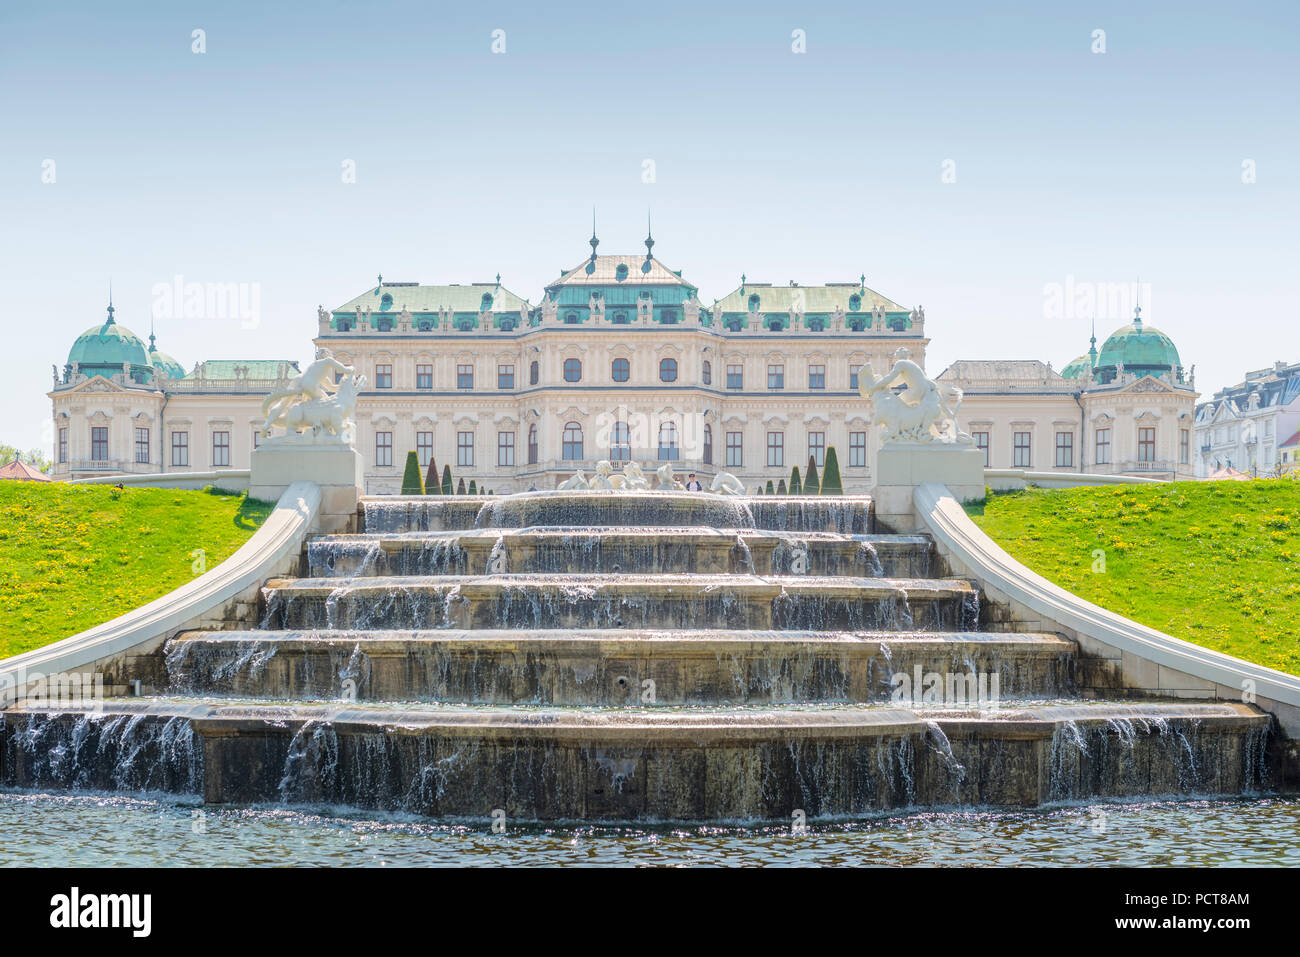 Europa, Österreich, Wien, Schloss, Palast, Belvedere, Vienna, Austria, architecture, capital Stock Photo